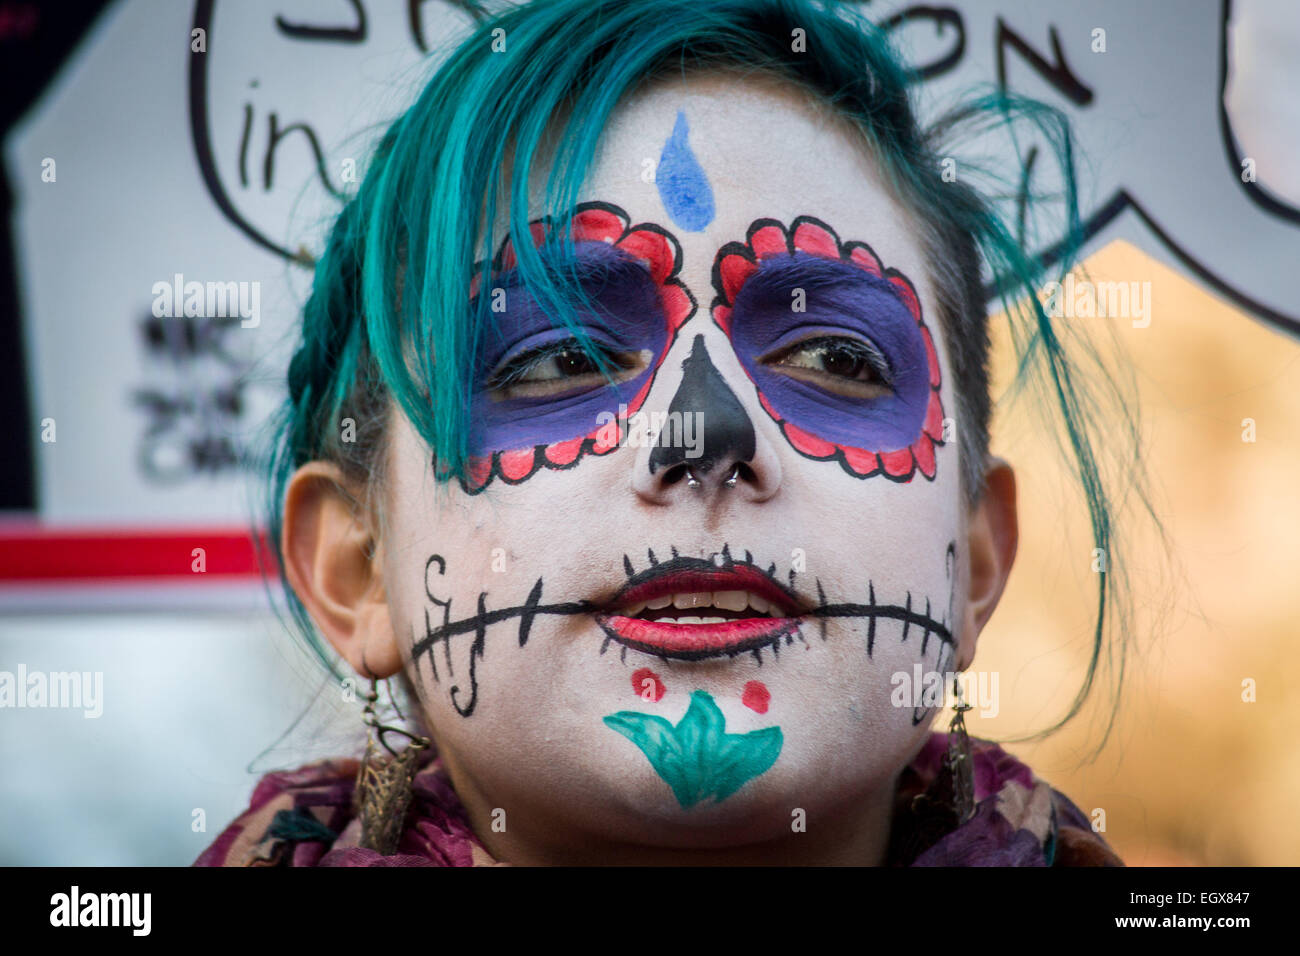 Londra, Regno Unito. 3 Marzo, 2015. Protesta contro il presidente messicano Peña Nieto U.K. visita Credito: Guy Corbishley/Alamy Live News Foto Stock